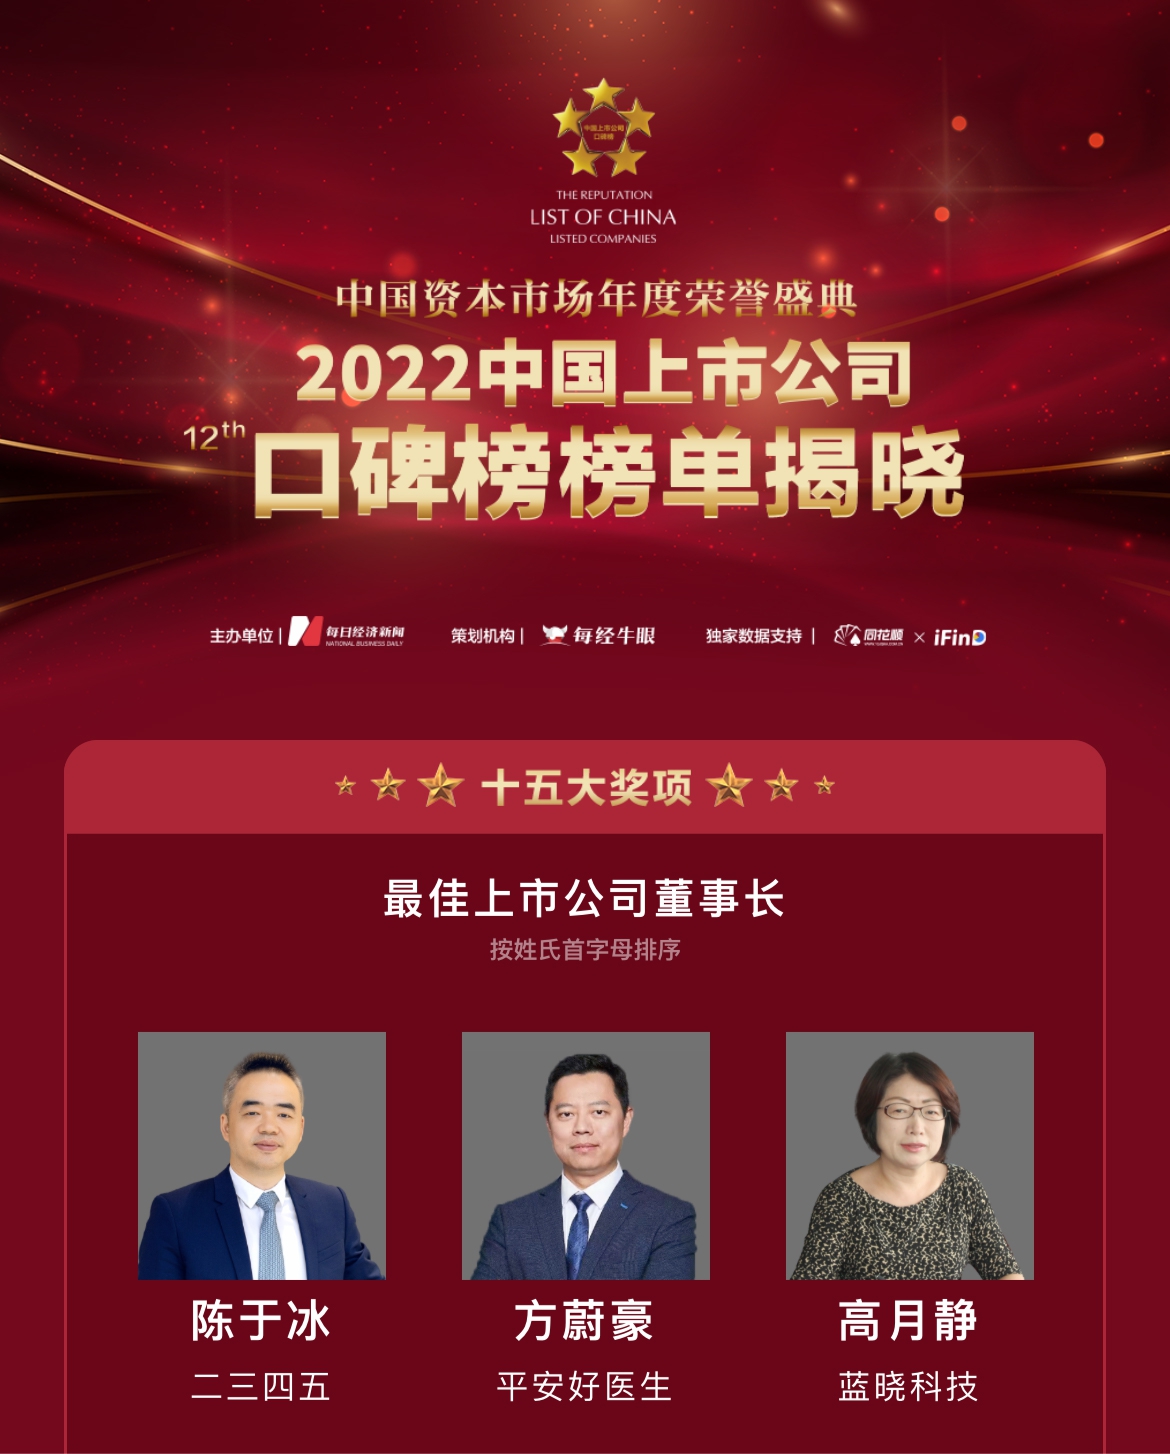 海博论坛科技荣膺“第十二届中国上市公司口碑榜”两项大奖